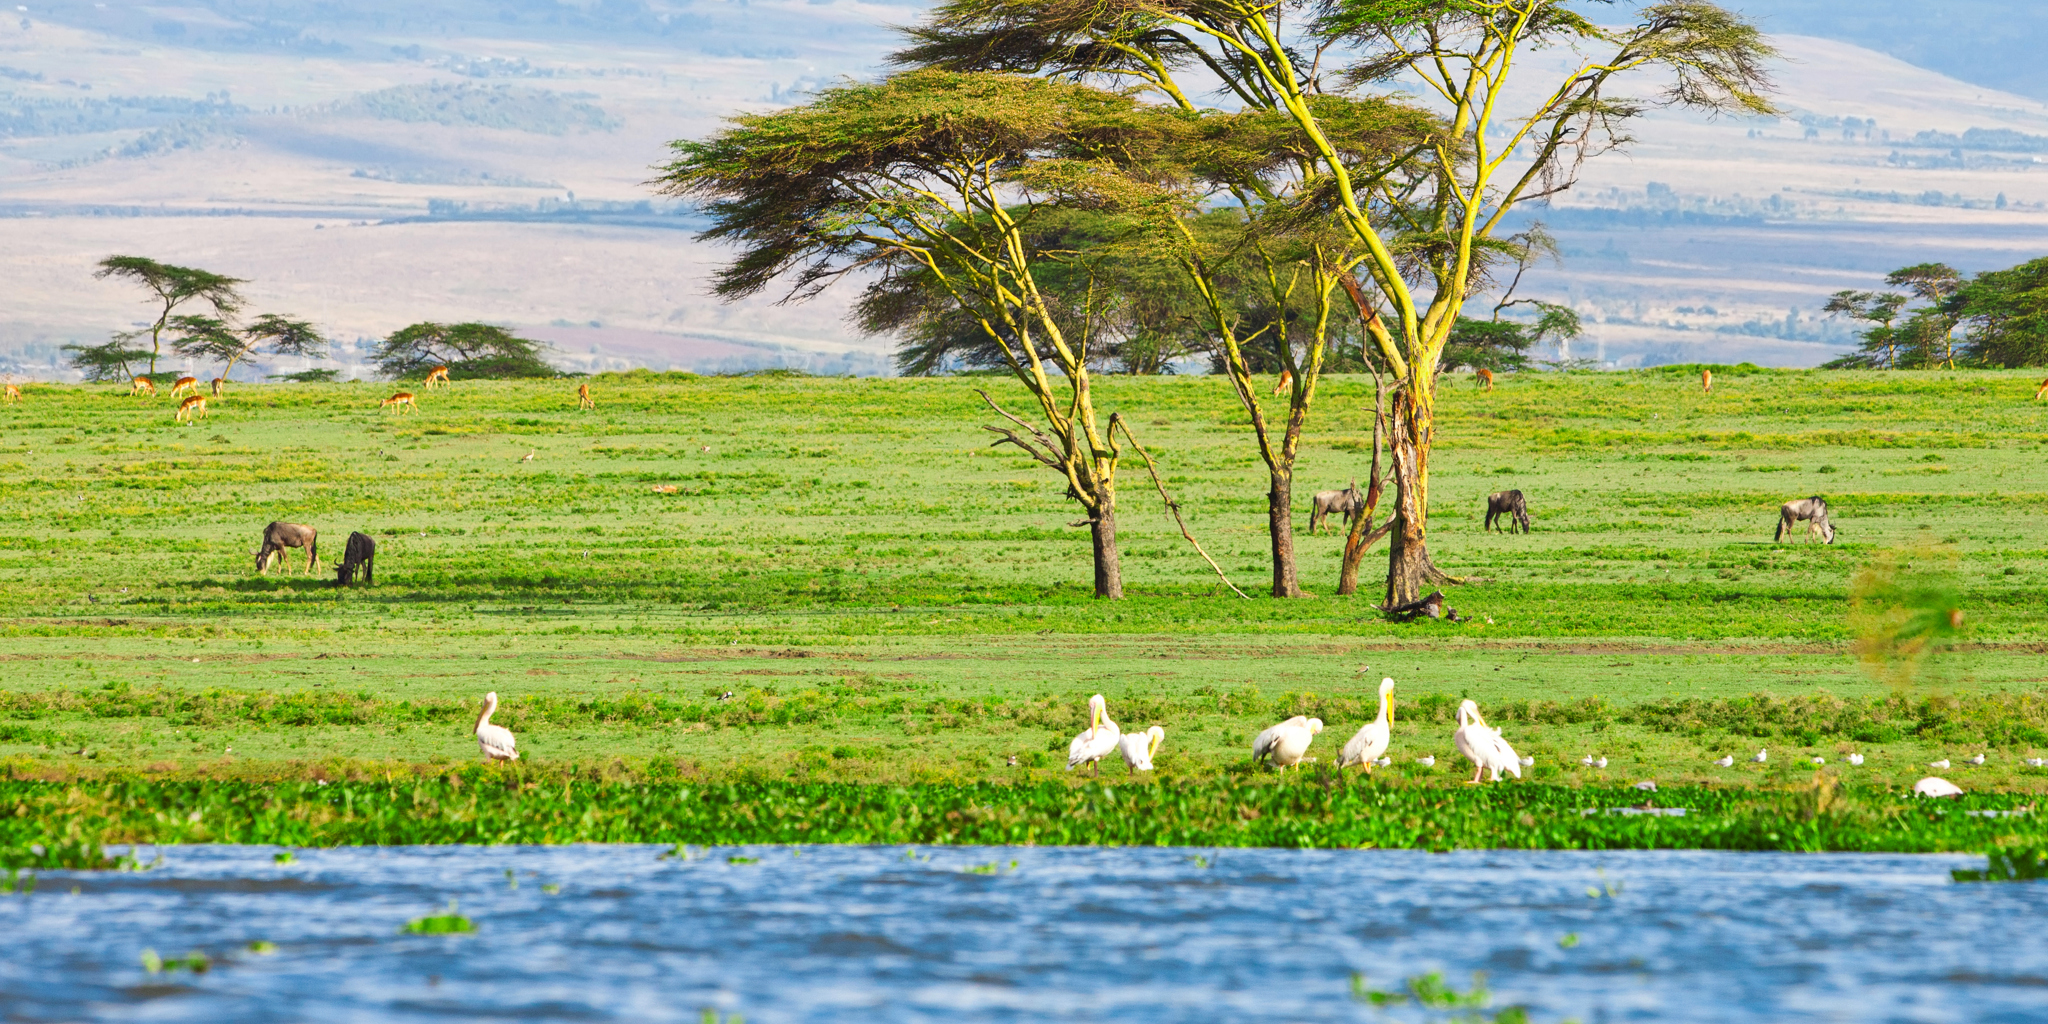 Lake Naivasha national park wildlife, Kenya safaris 